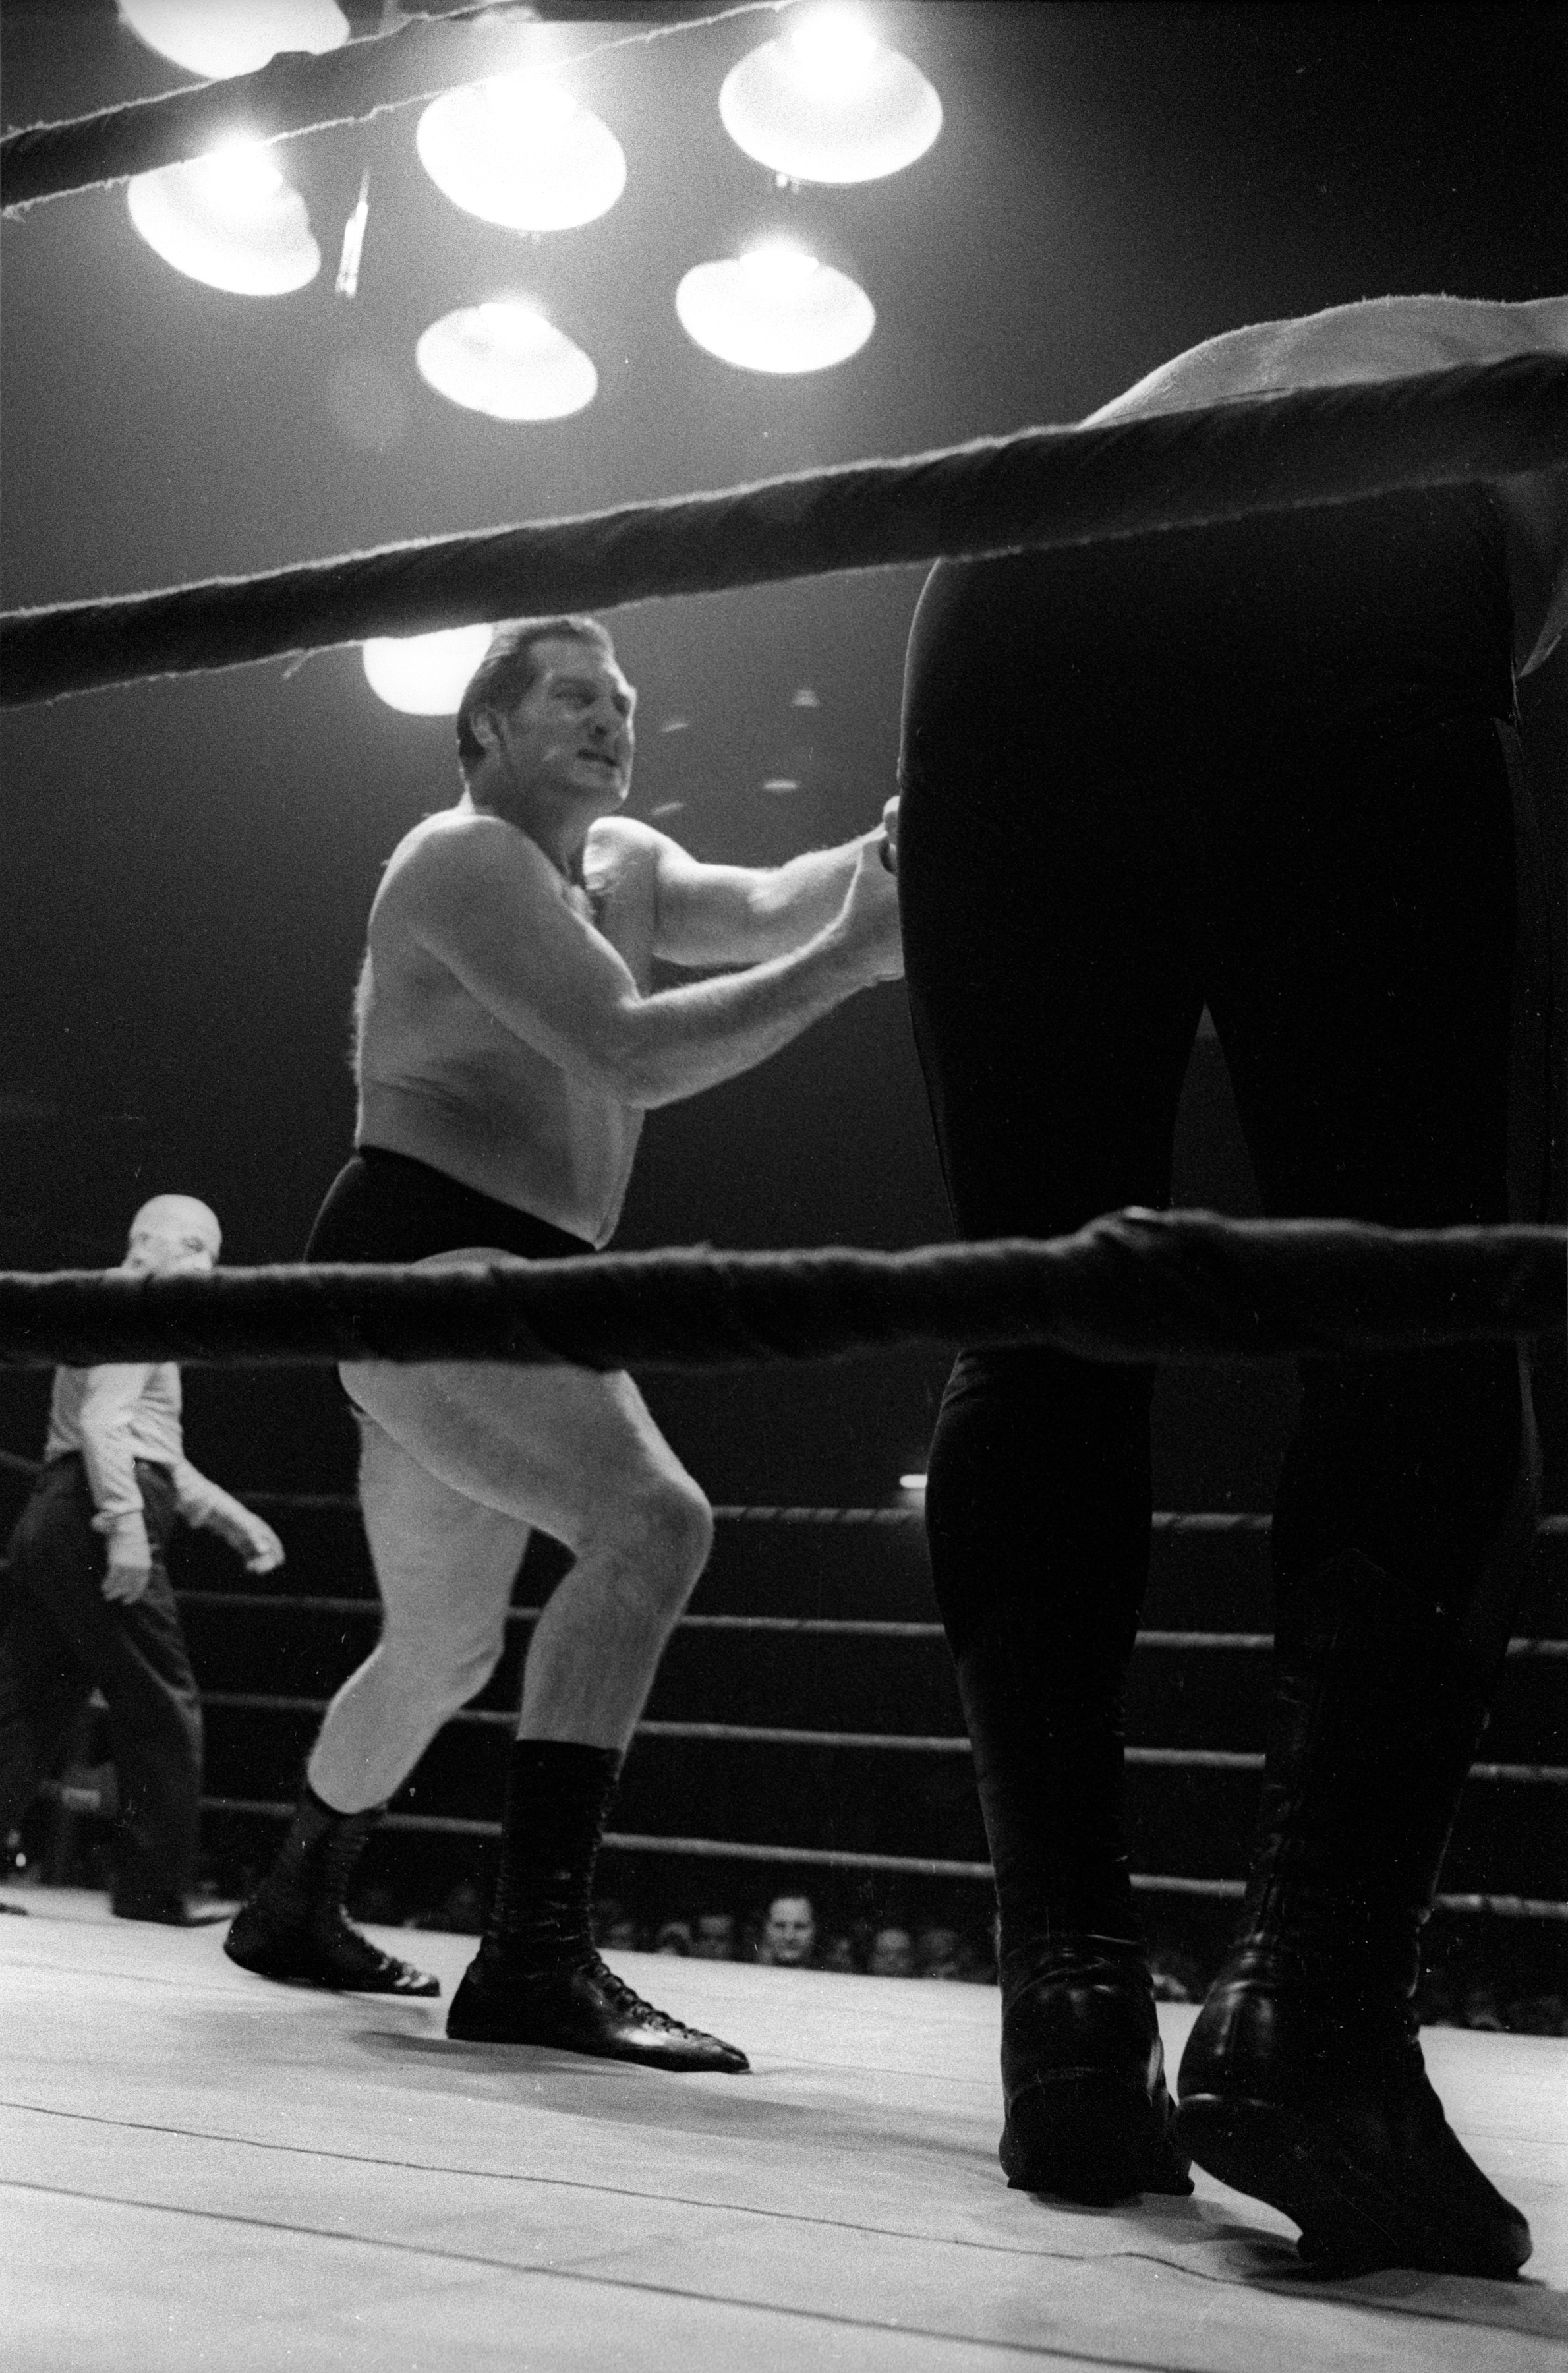   Juan Caruso vs Mike Conrad, 1971  